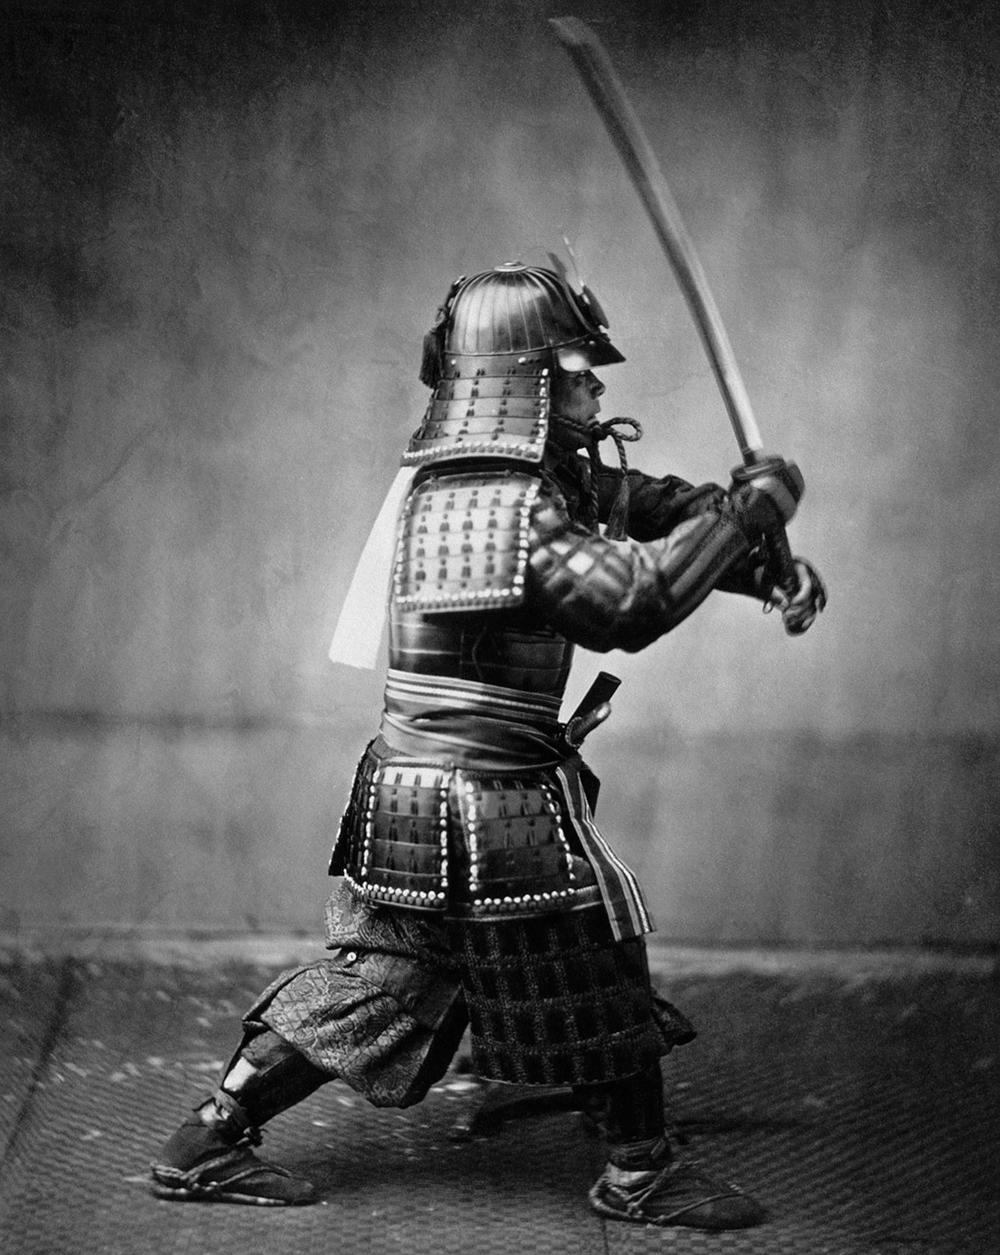 Et våtplatefotografi av en samurai i rustning, datert til rundt 1860. Legg merke til hvor mye bedre bildekvaliteten er, sammenlignet med det grove kalotypiet lenger oppe til høyre i saken. (Foto: Felice Beato, ca. 1860)